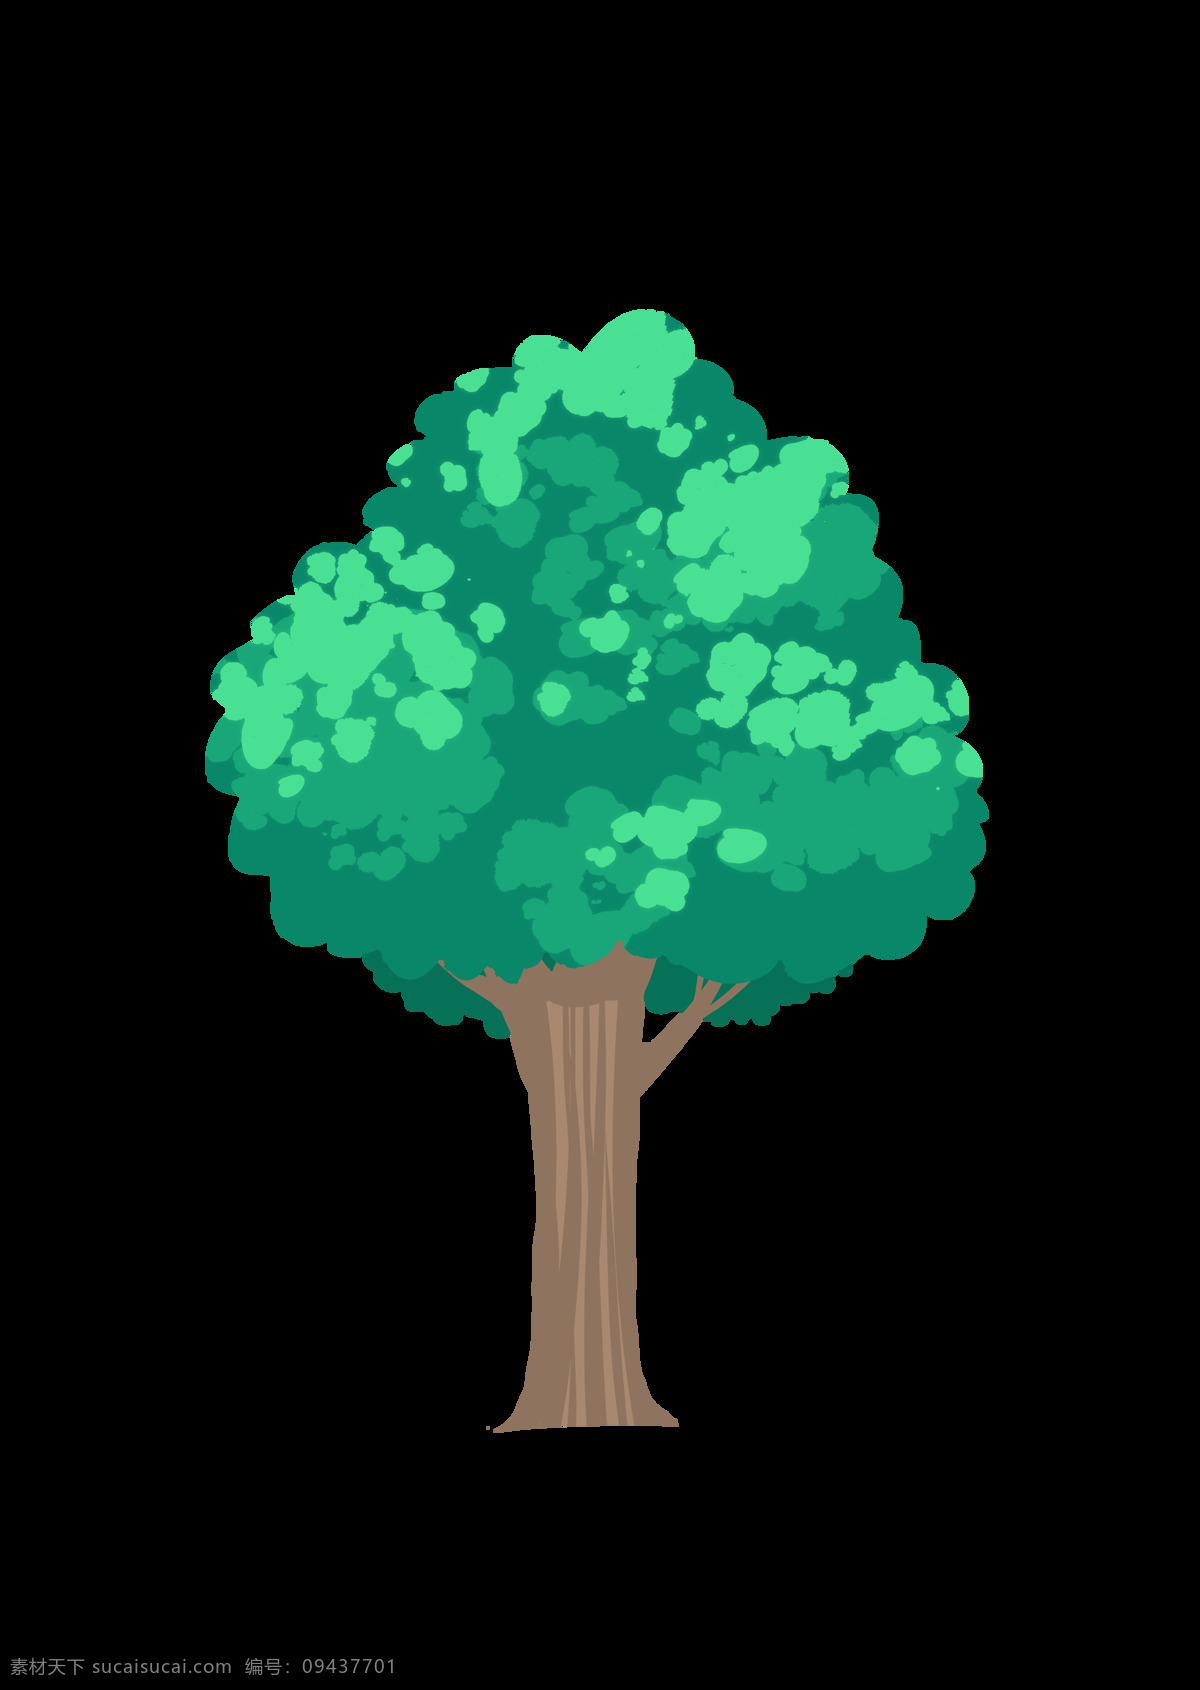 树 卡通风格 一棵树 树枝 树叶 树干 绿色 棕色 透明底 动漫动画 风景漫画